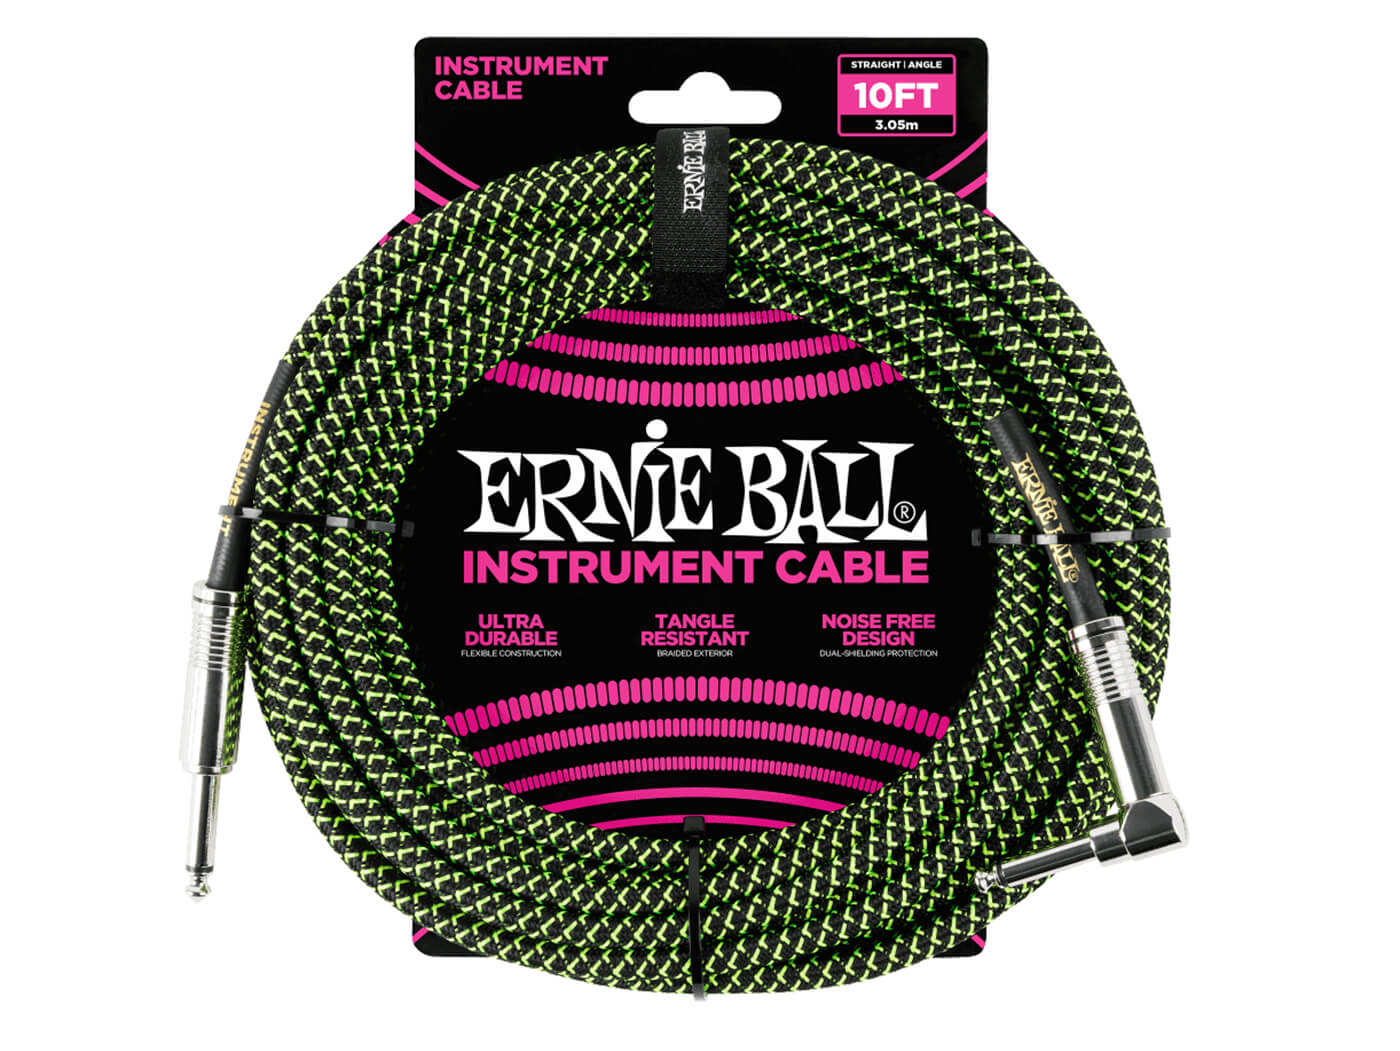 Ernie Ball Braided cable